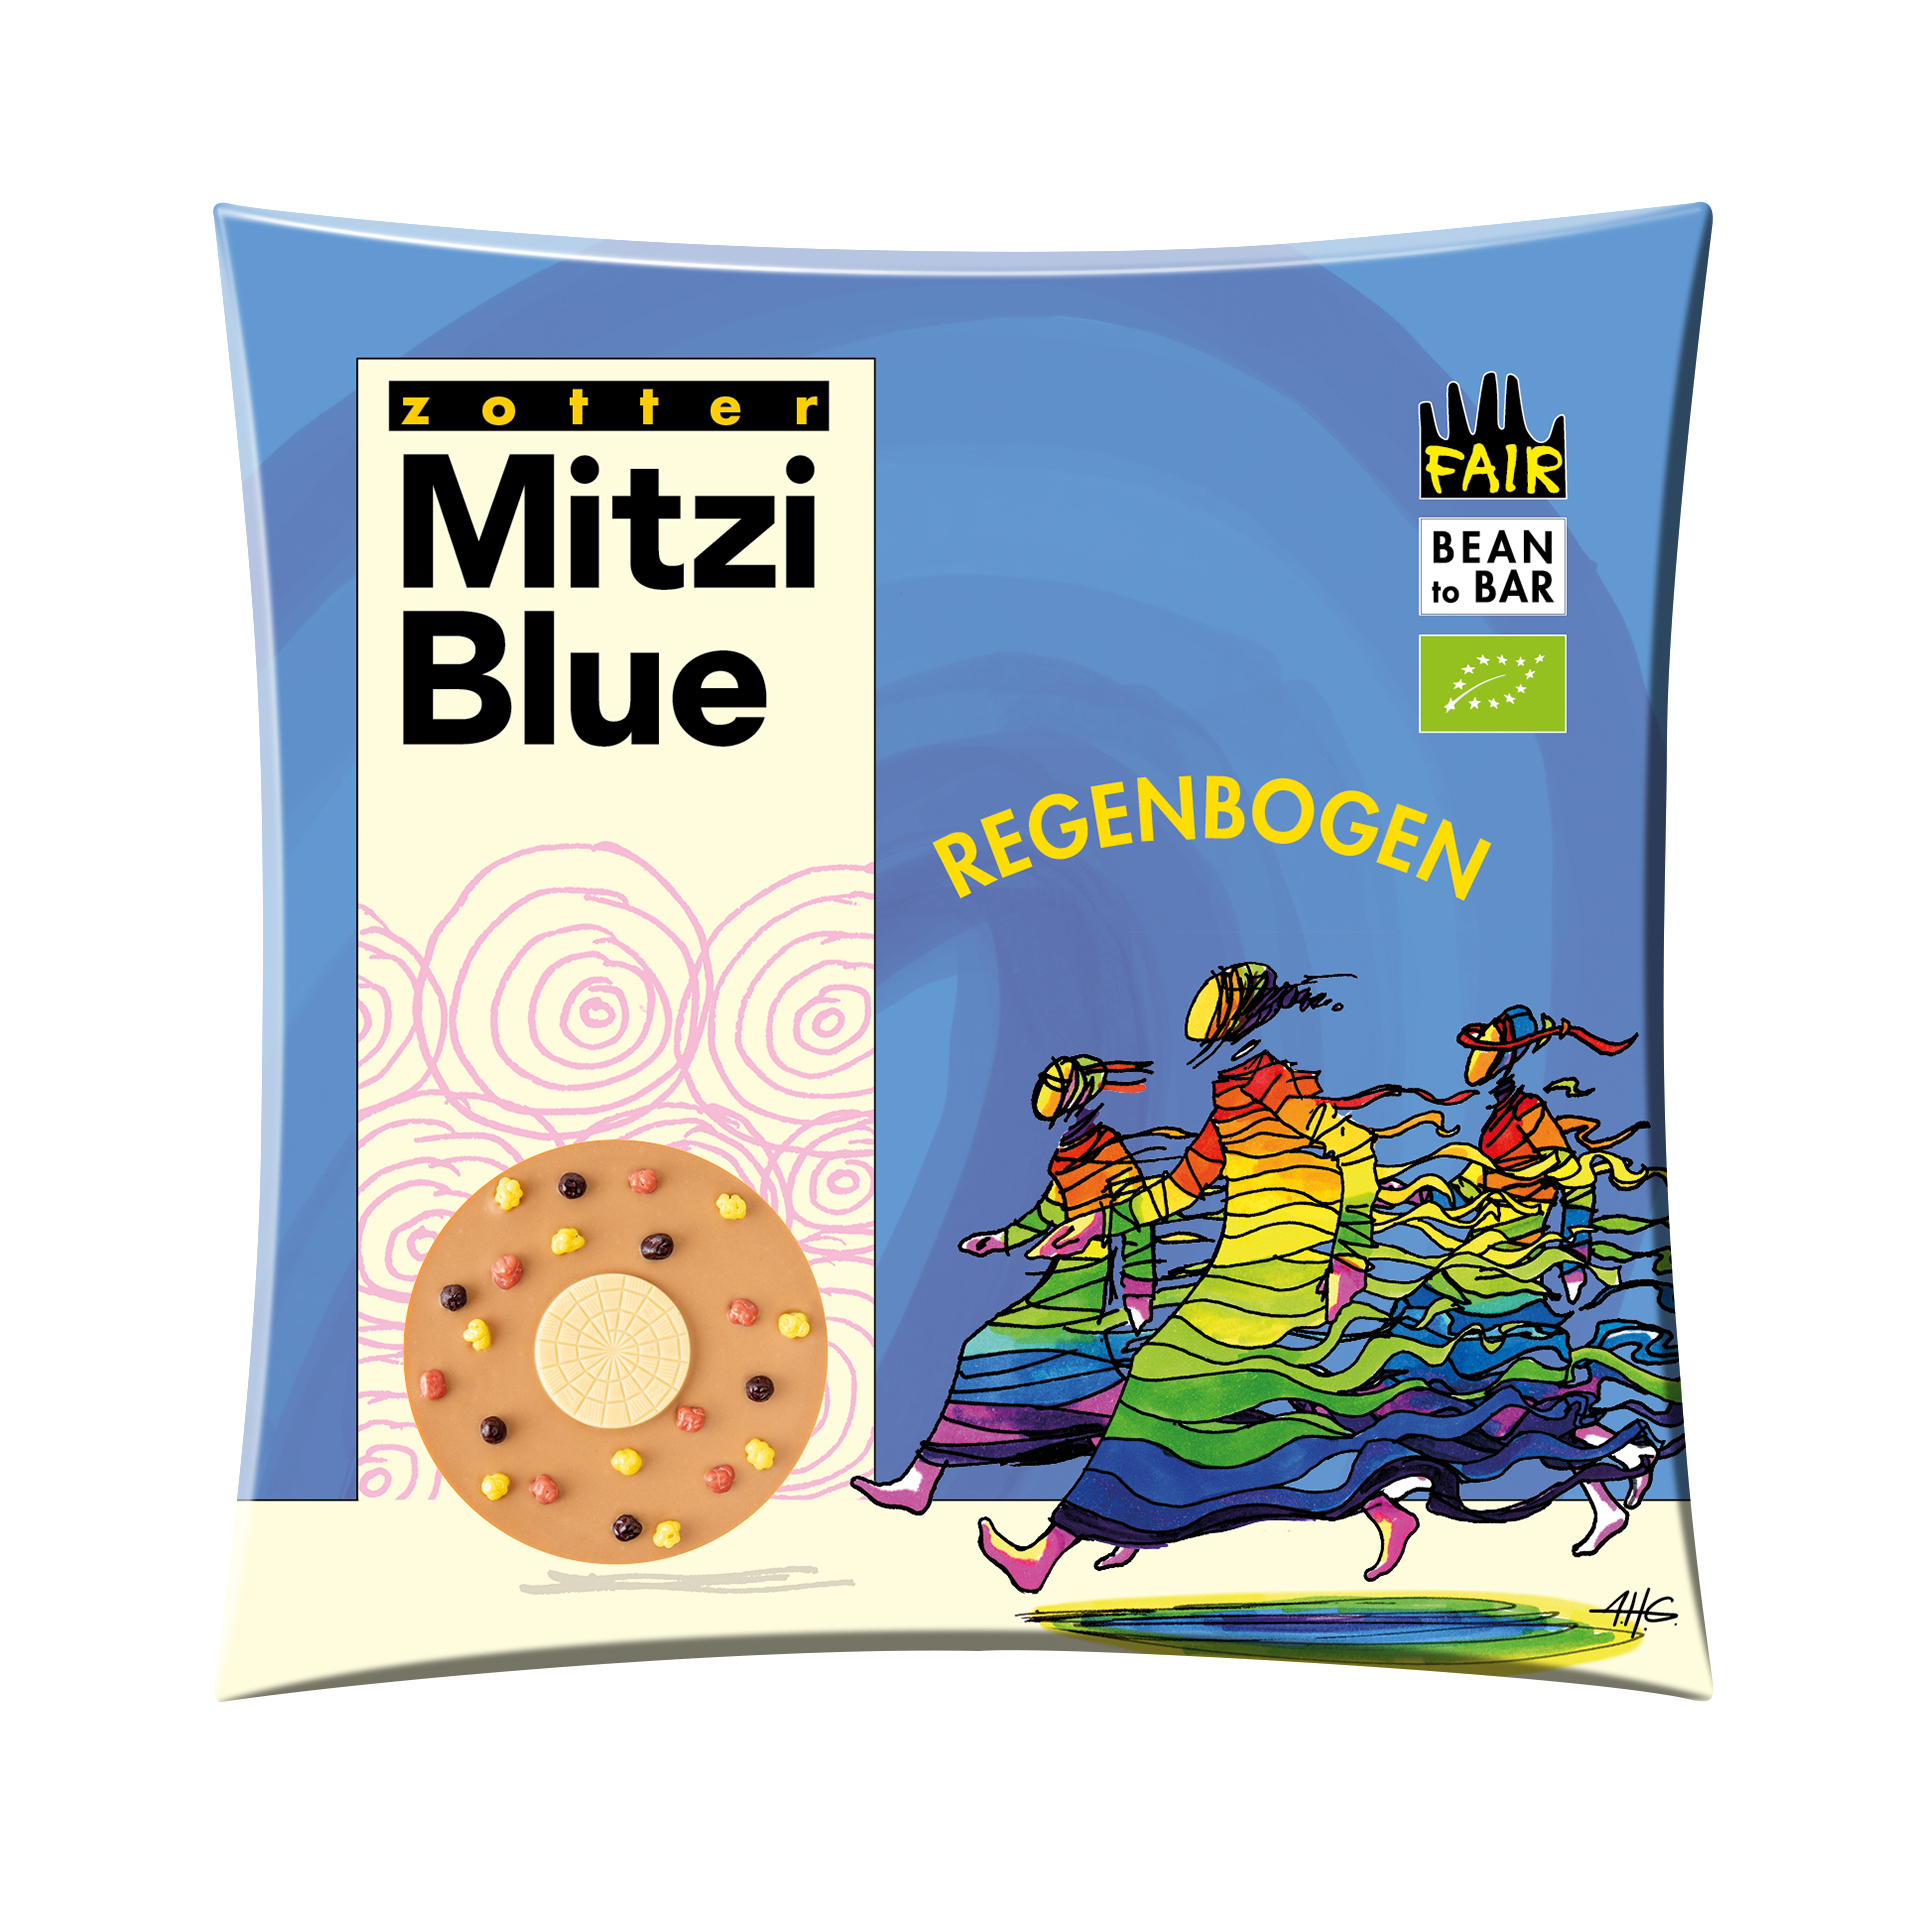 Mitzi Blue - Regenbogen